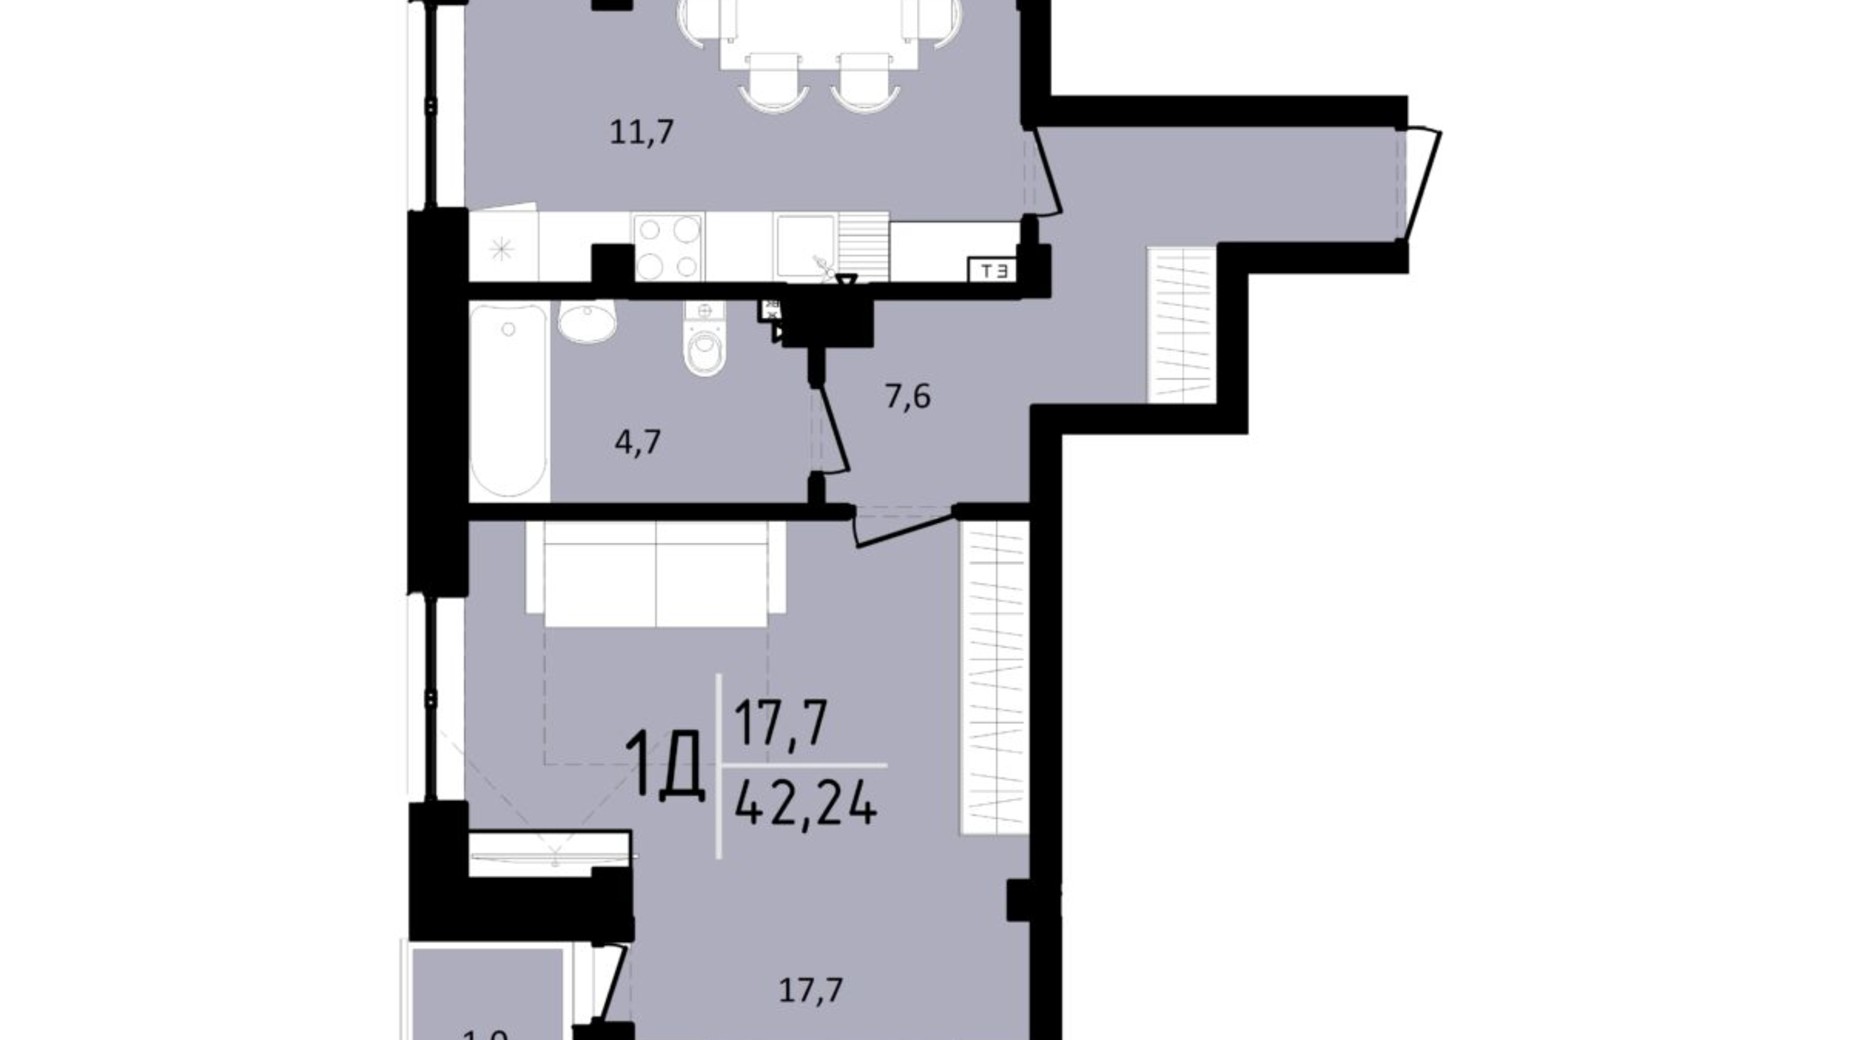 Планировка 1-комнатной квартиры в ЖК Триумф II 42.24 м², фото 568768